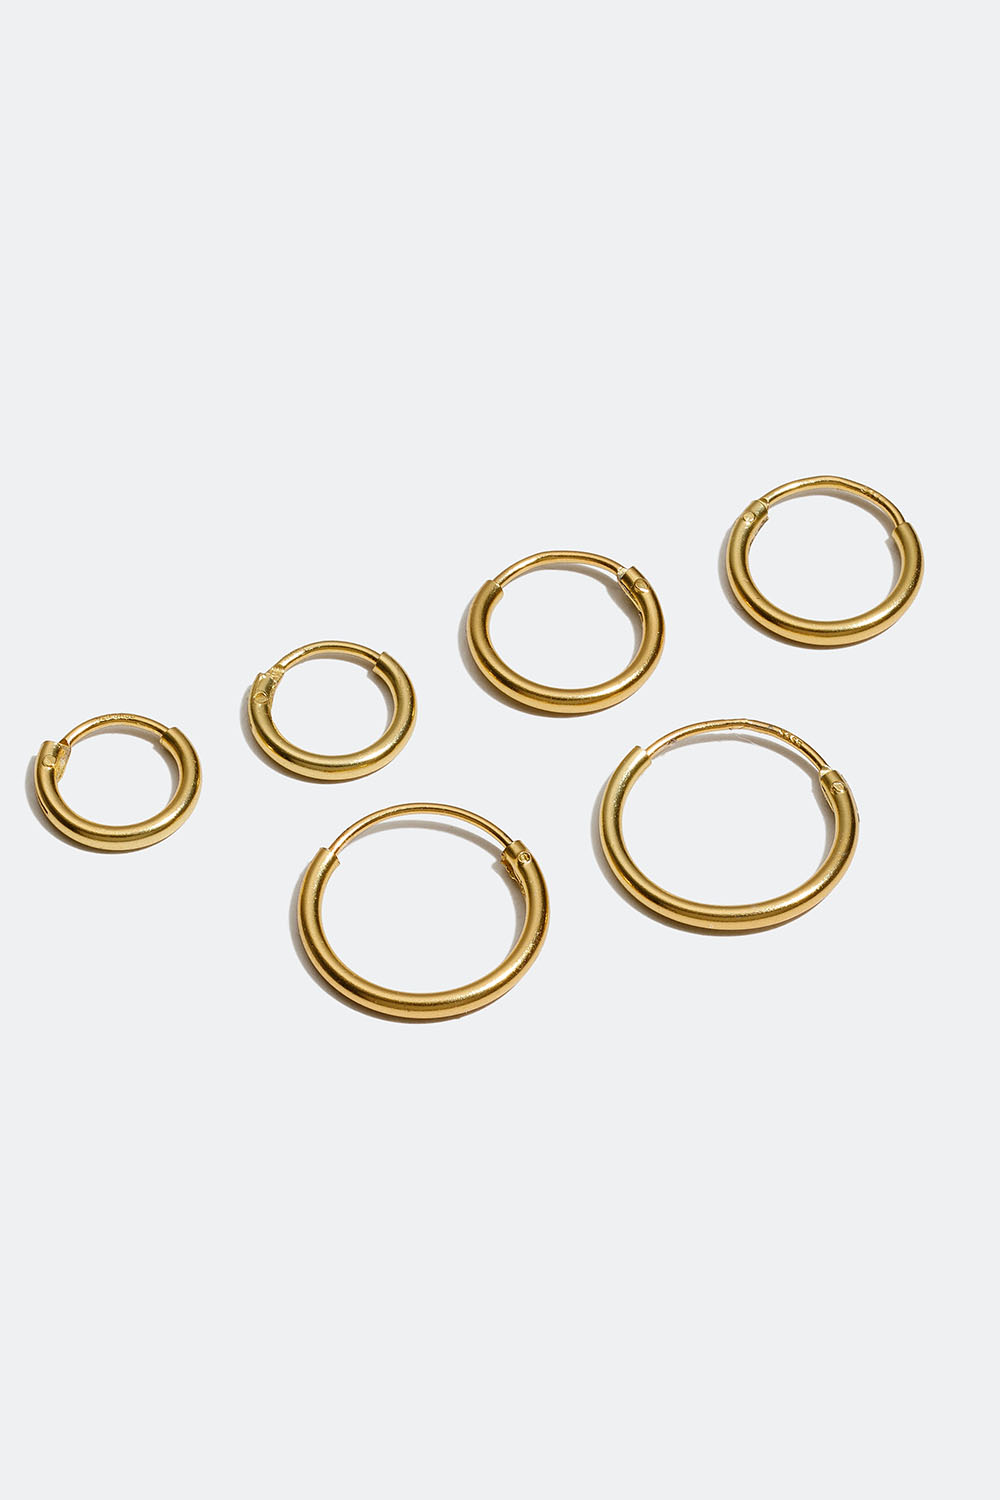 Hoops förgyllda med 18K guld, 3-pack, 1 cm i gruppen Smycken / Örhängen / Hoops hos Glitter (307411661000)